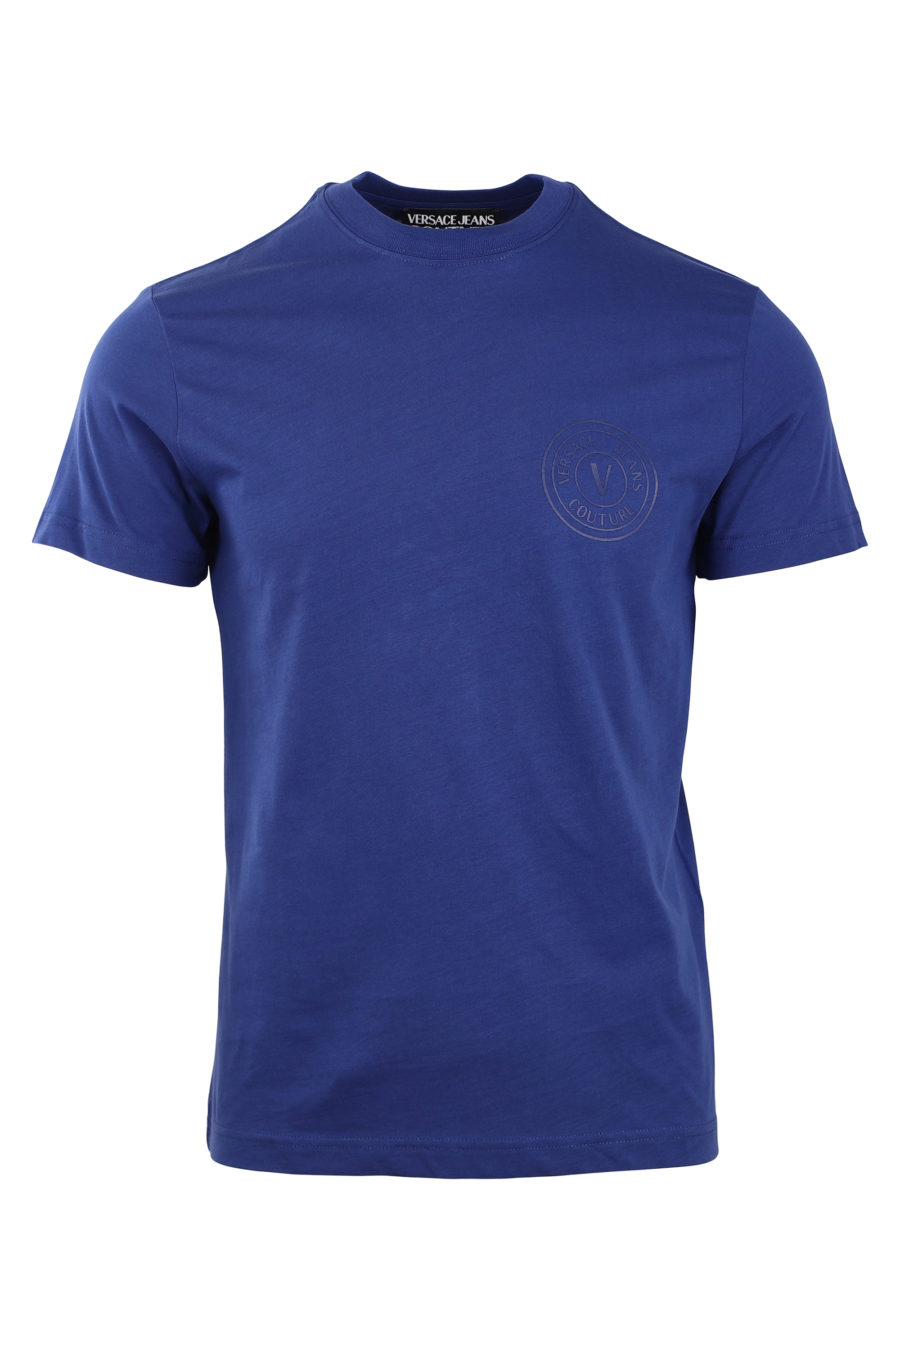 Camiseta azul marino con logo redondo pequeño - IMG 0769